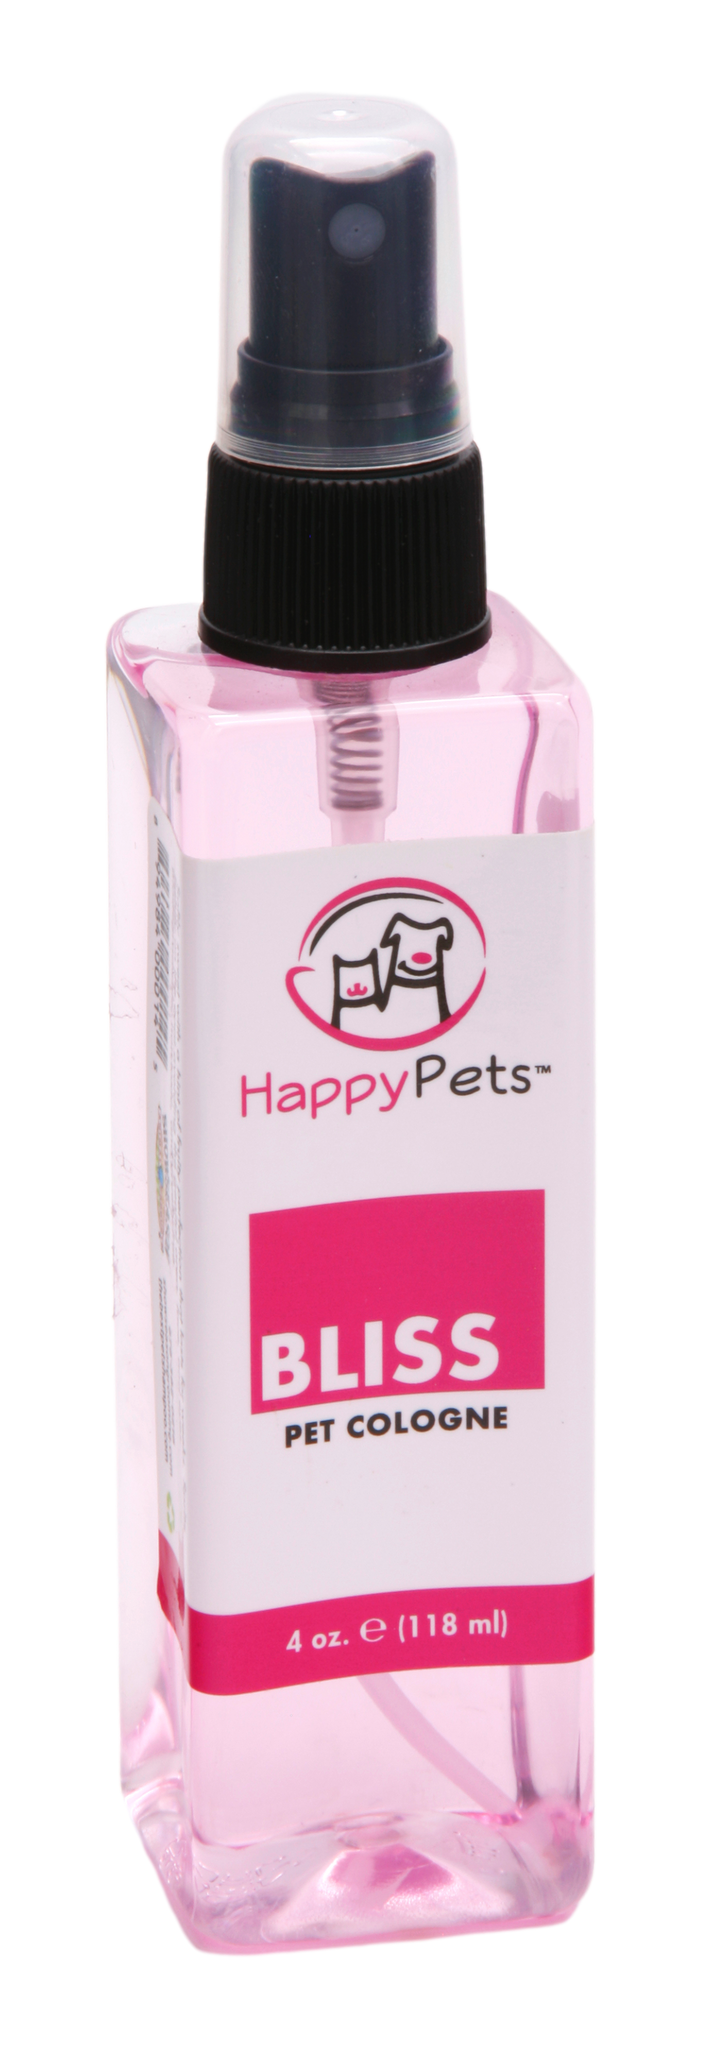 Bliss Pet Cologne | Happy Pets®